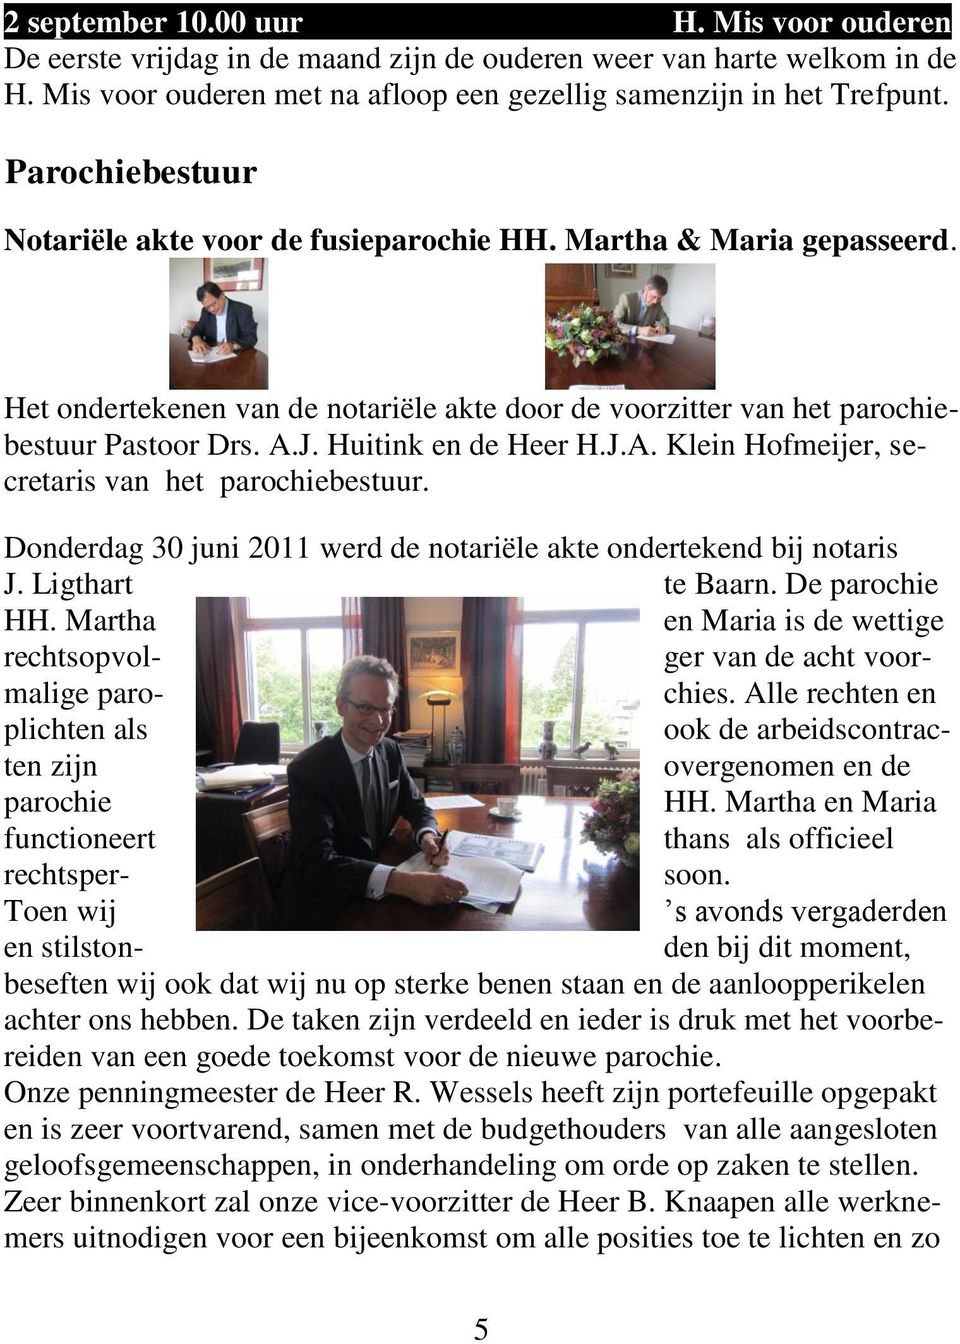 Huitink en de Heer H.J.A. Klein Hofmeijer, secretaris van het parochiebestuur. Donderdag 30 juni 2011 werd de notariële akte ondertekend bij notaris J. Ligthart te Baarn. De parochie HH.